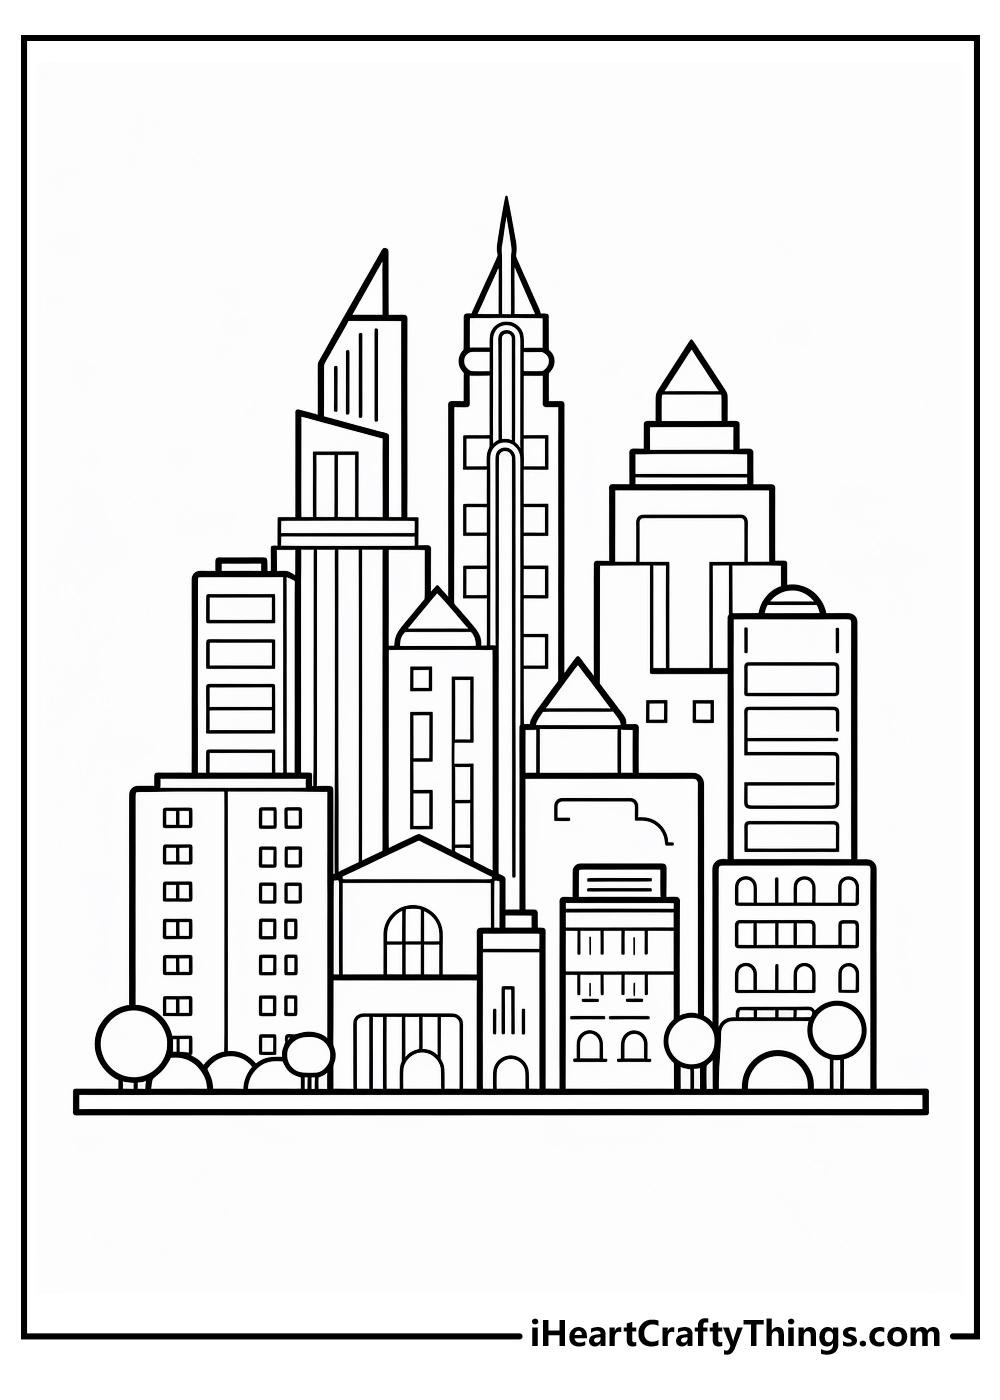 metropolis coloring sheet free download